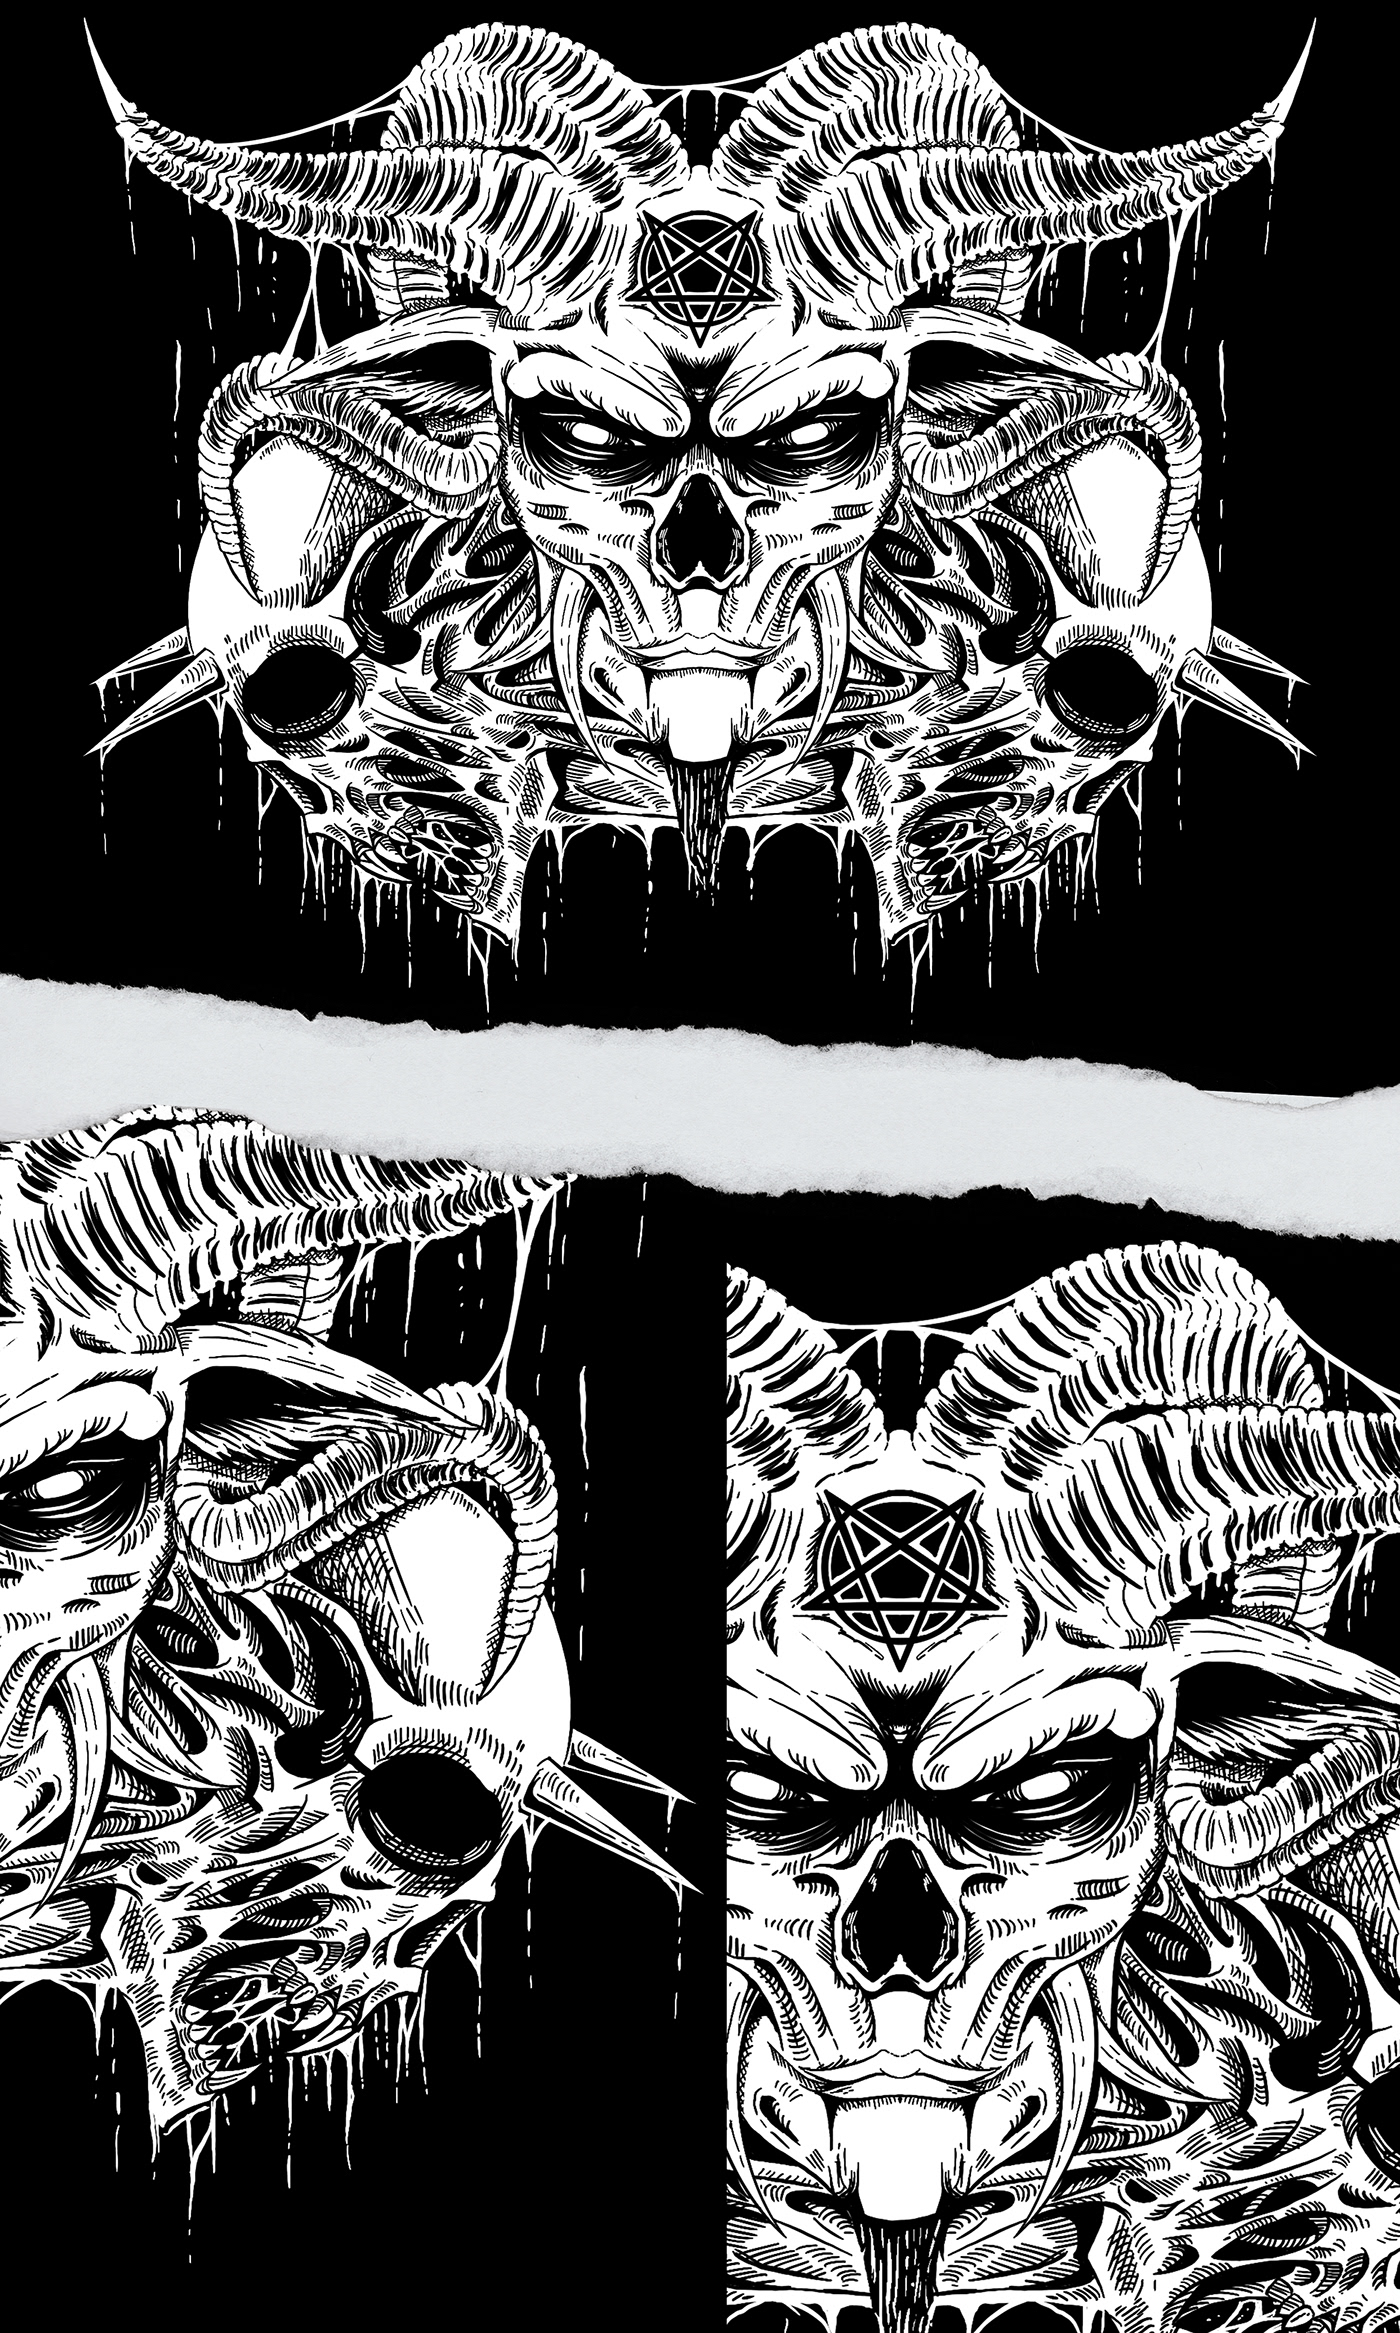 ILLUSTRATION  Digital Art  artwork Character design  darkart Deathmetal Blackmetal metalart skull dark